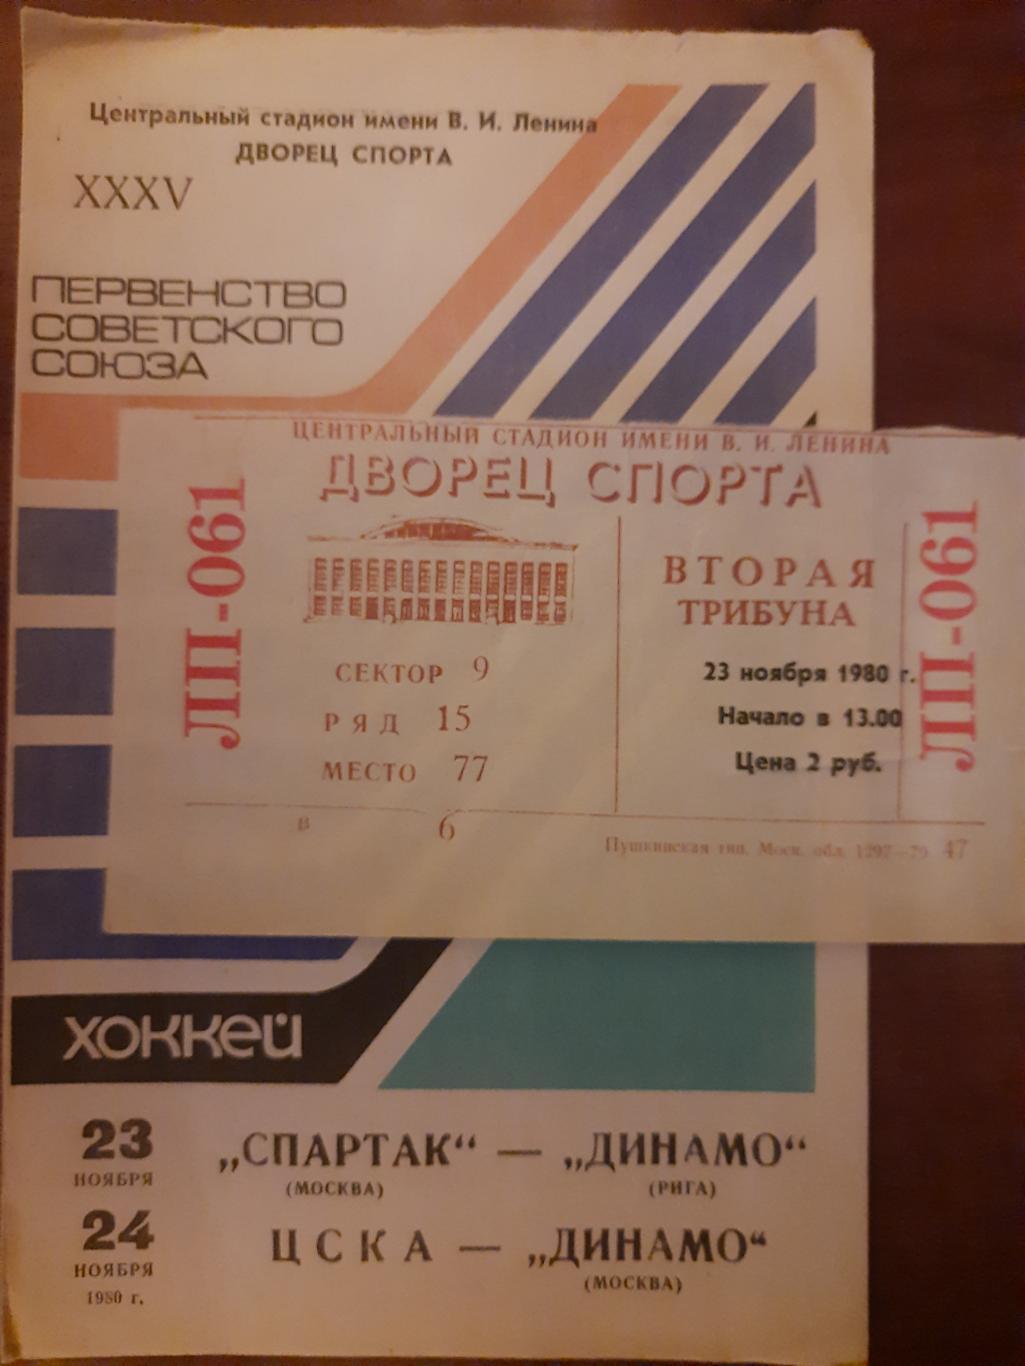 Спартак М - Динамо Рига , ЦСКА - Динамо Москва 23,24.11.1980